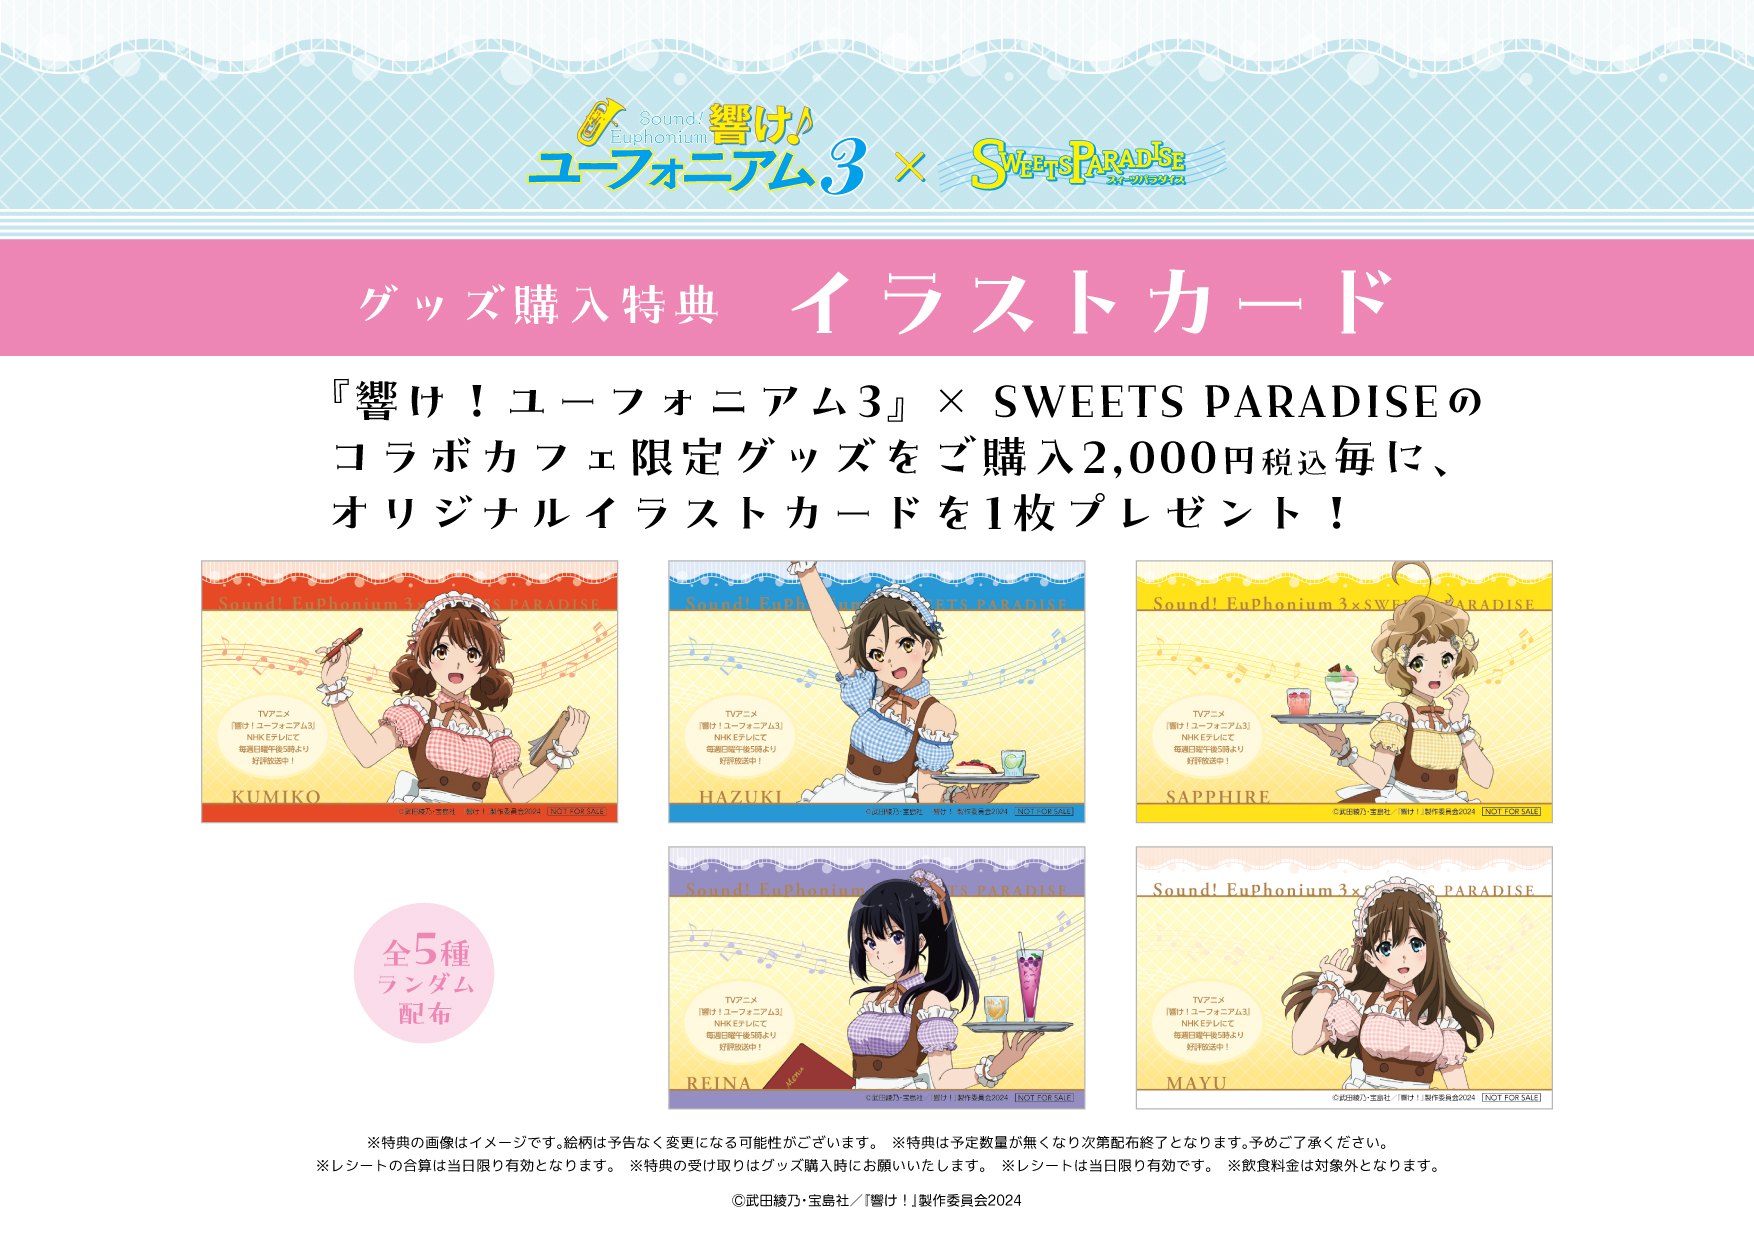 TVアニメ『響け！ユーフォニアム3』× SWEETS PARADISE コラボカフェ 